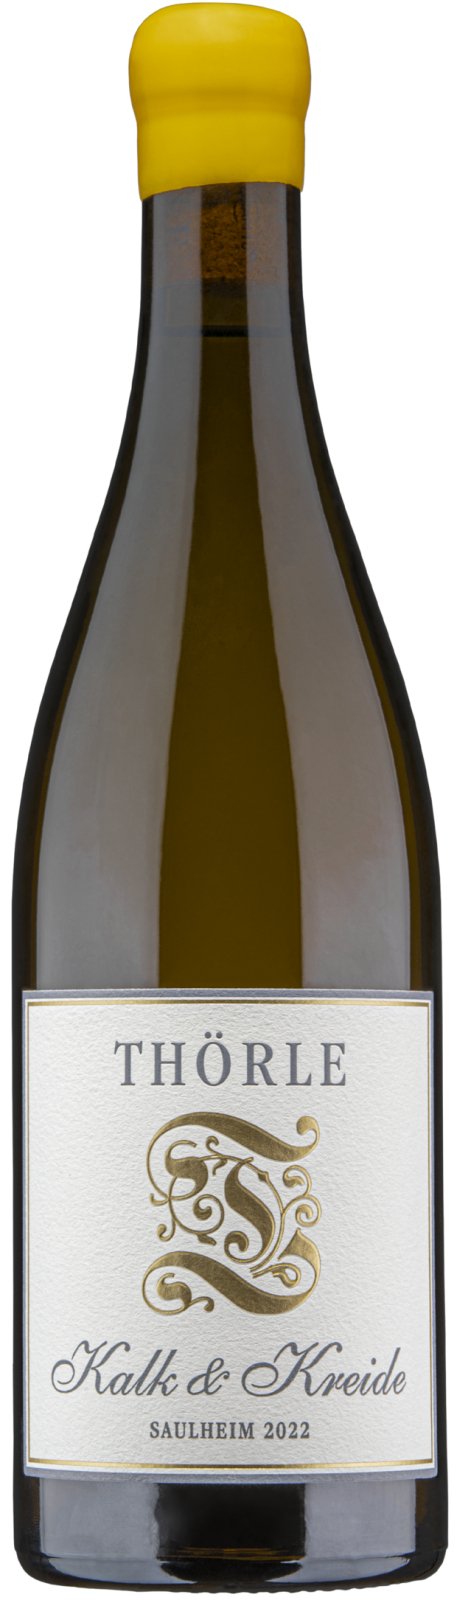 Kalk 2022 Thörle - Blanc Chardonnay & Caviste Pinot Kreide Wine